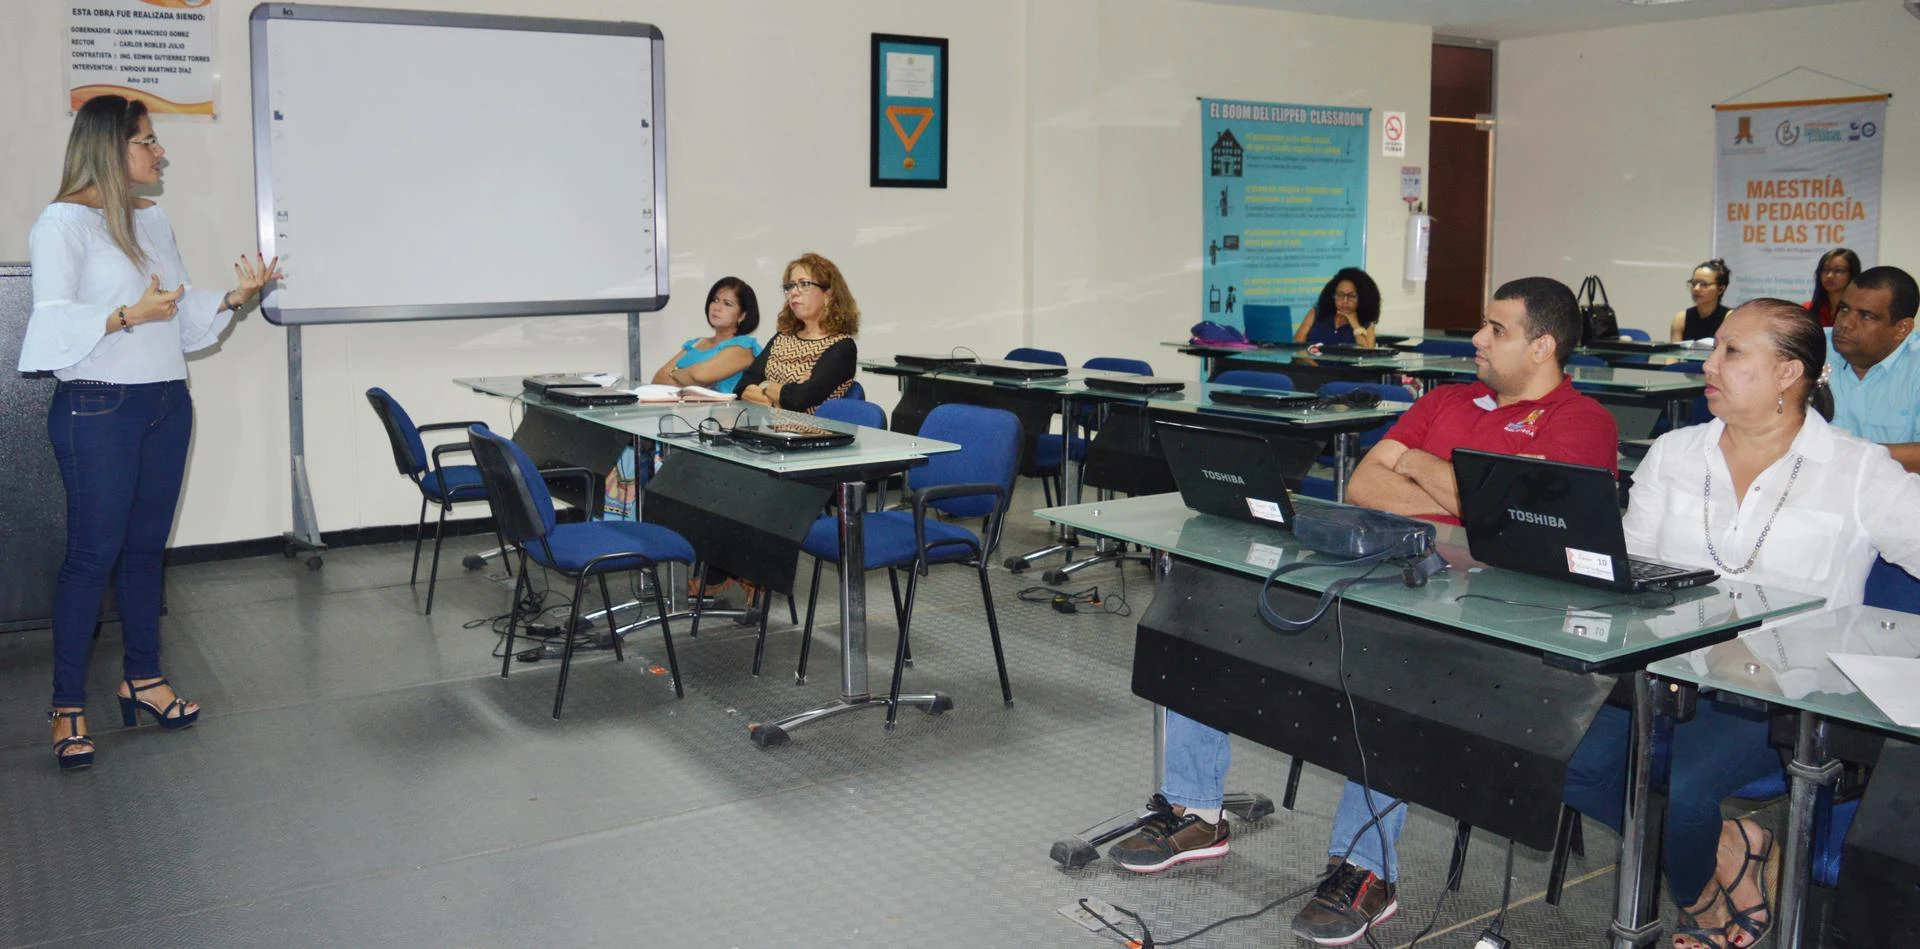 hoyennoticia.com, Uniguajira Construye: "Hay que reducir la brecha digital"